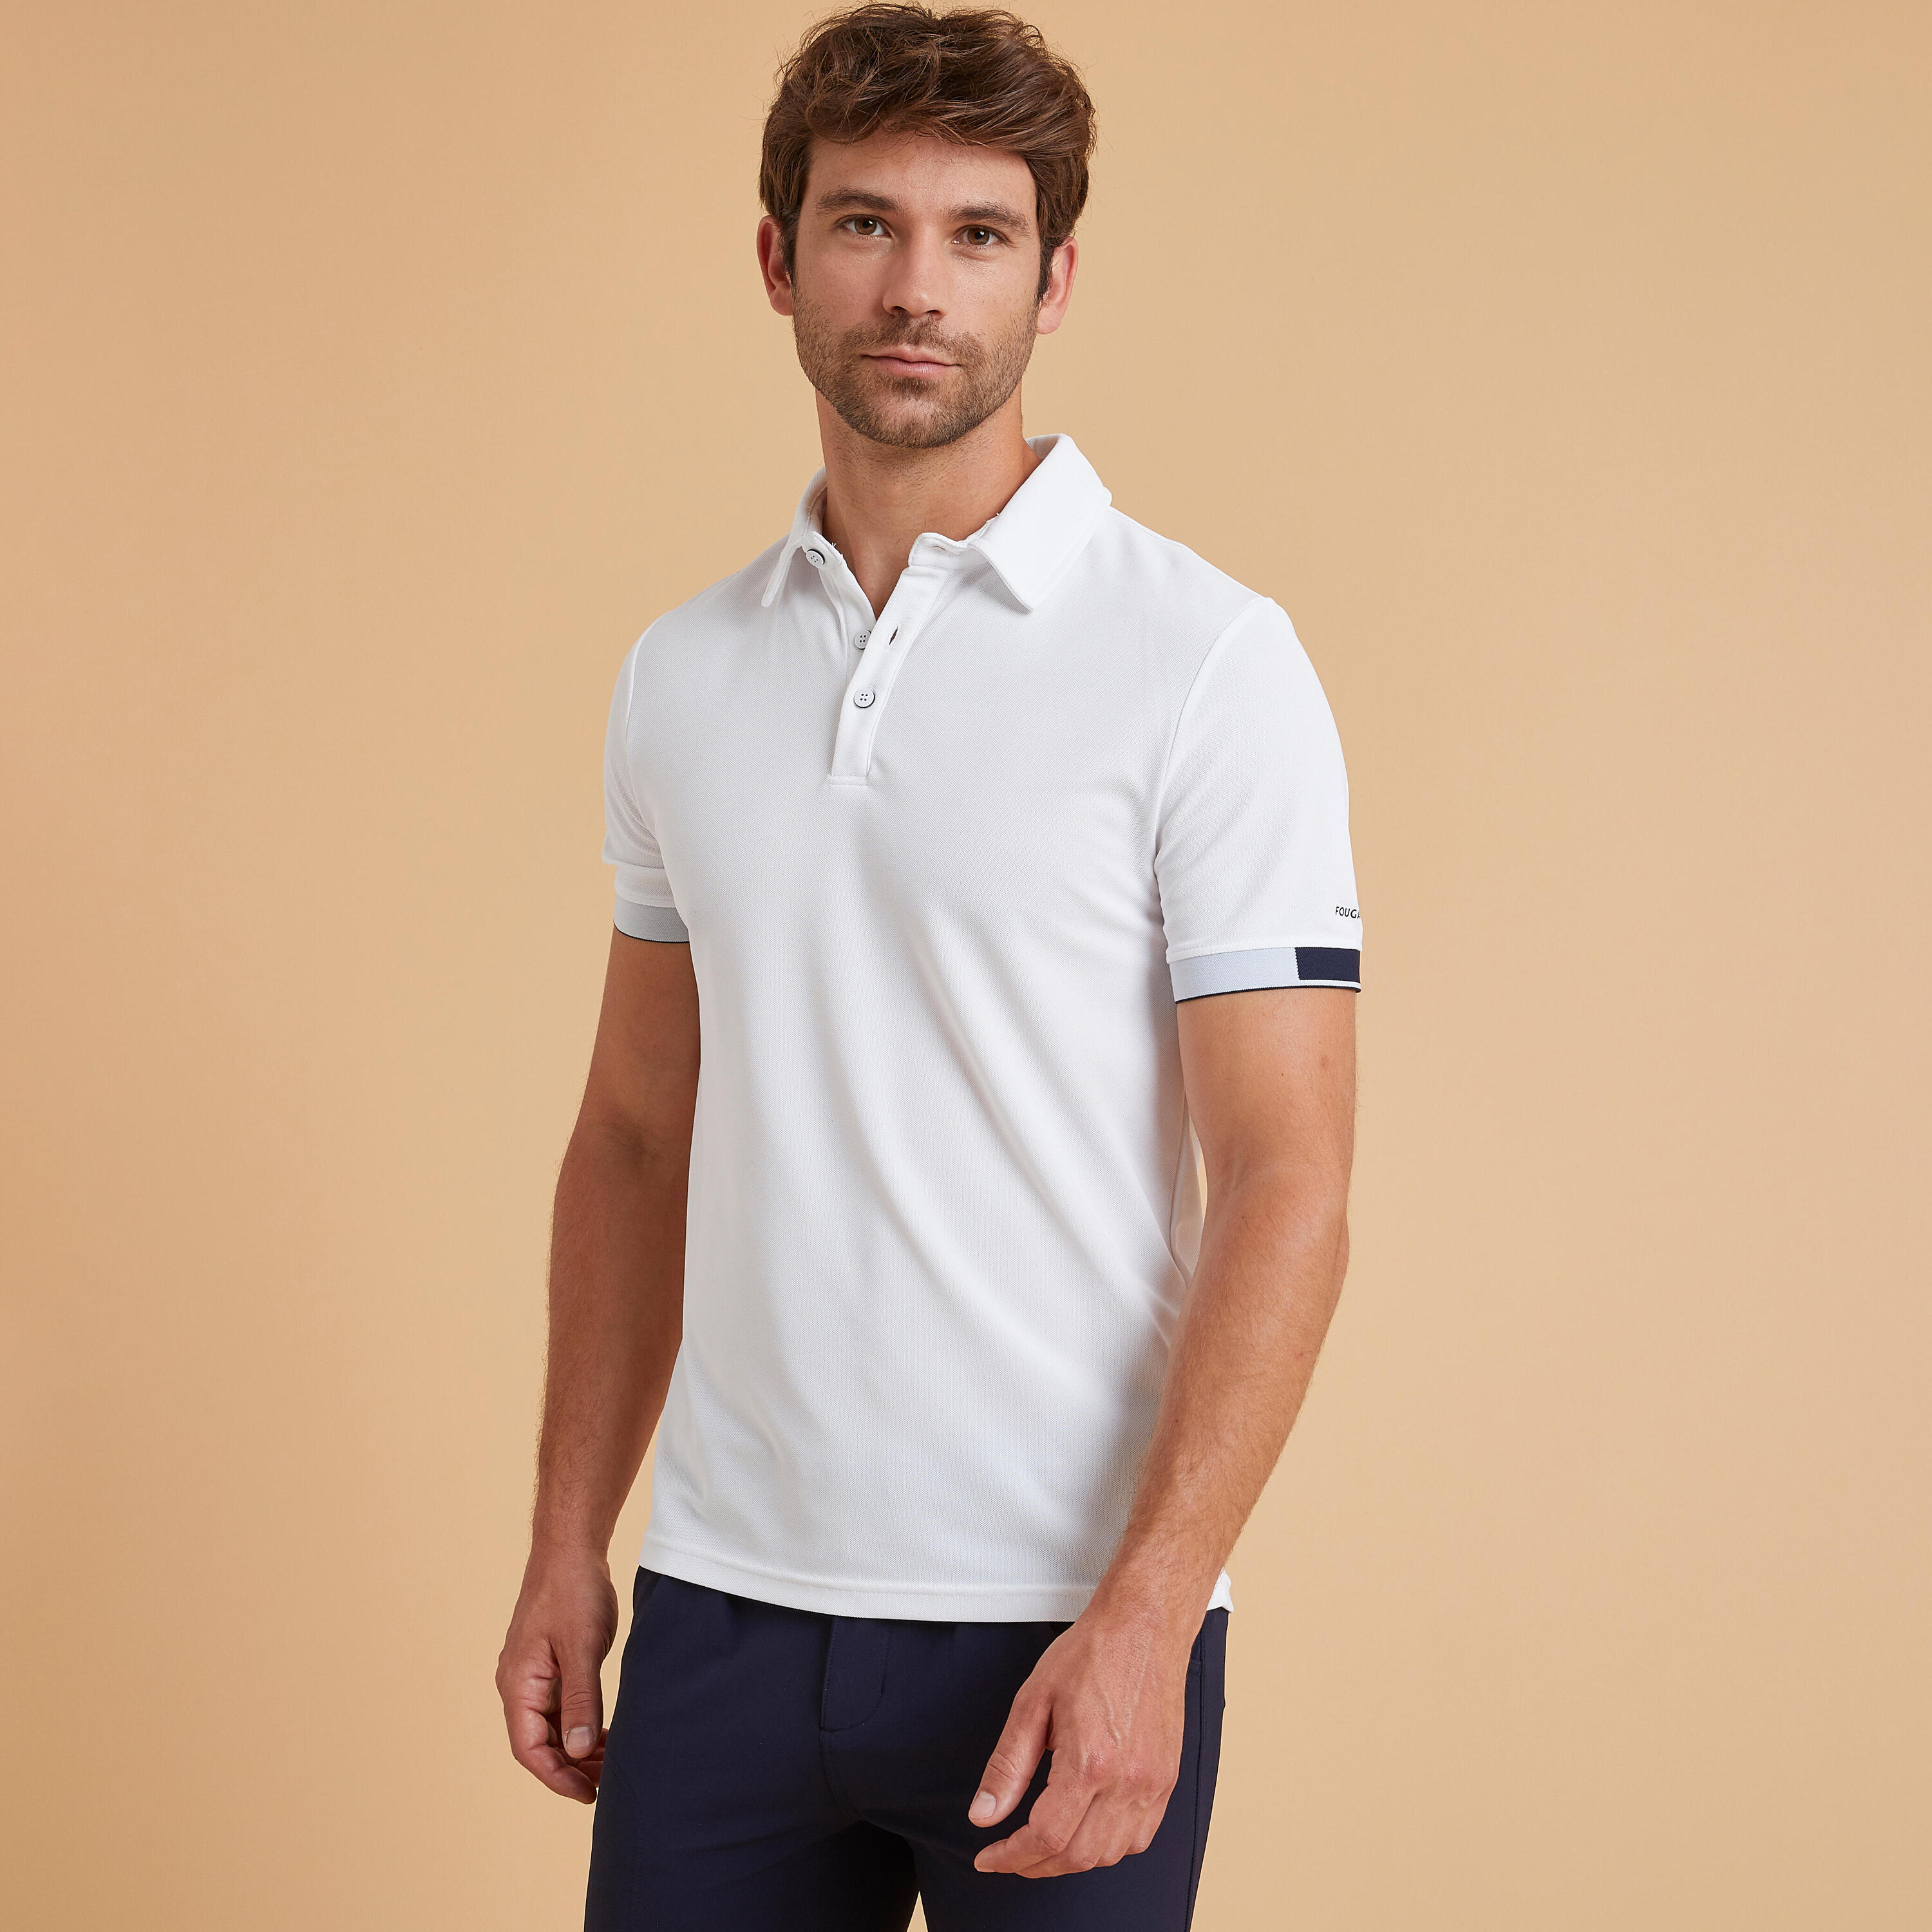 Рубашка-поло Fouganza для верховой езды мужская, белый рубашка поло для верховой езды мужская одежда топ с коротким рукавом для верховой езды летняя хлопковая футболка мужская футболка одежд